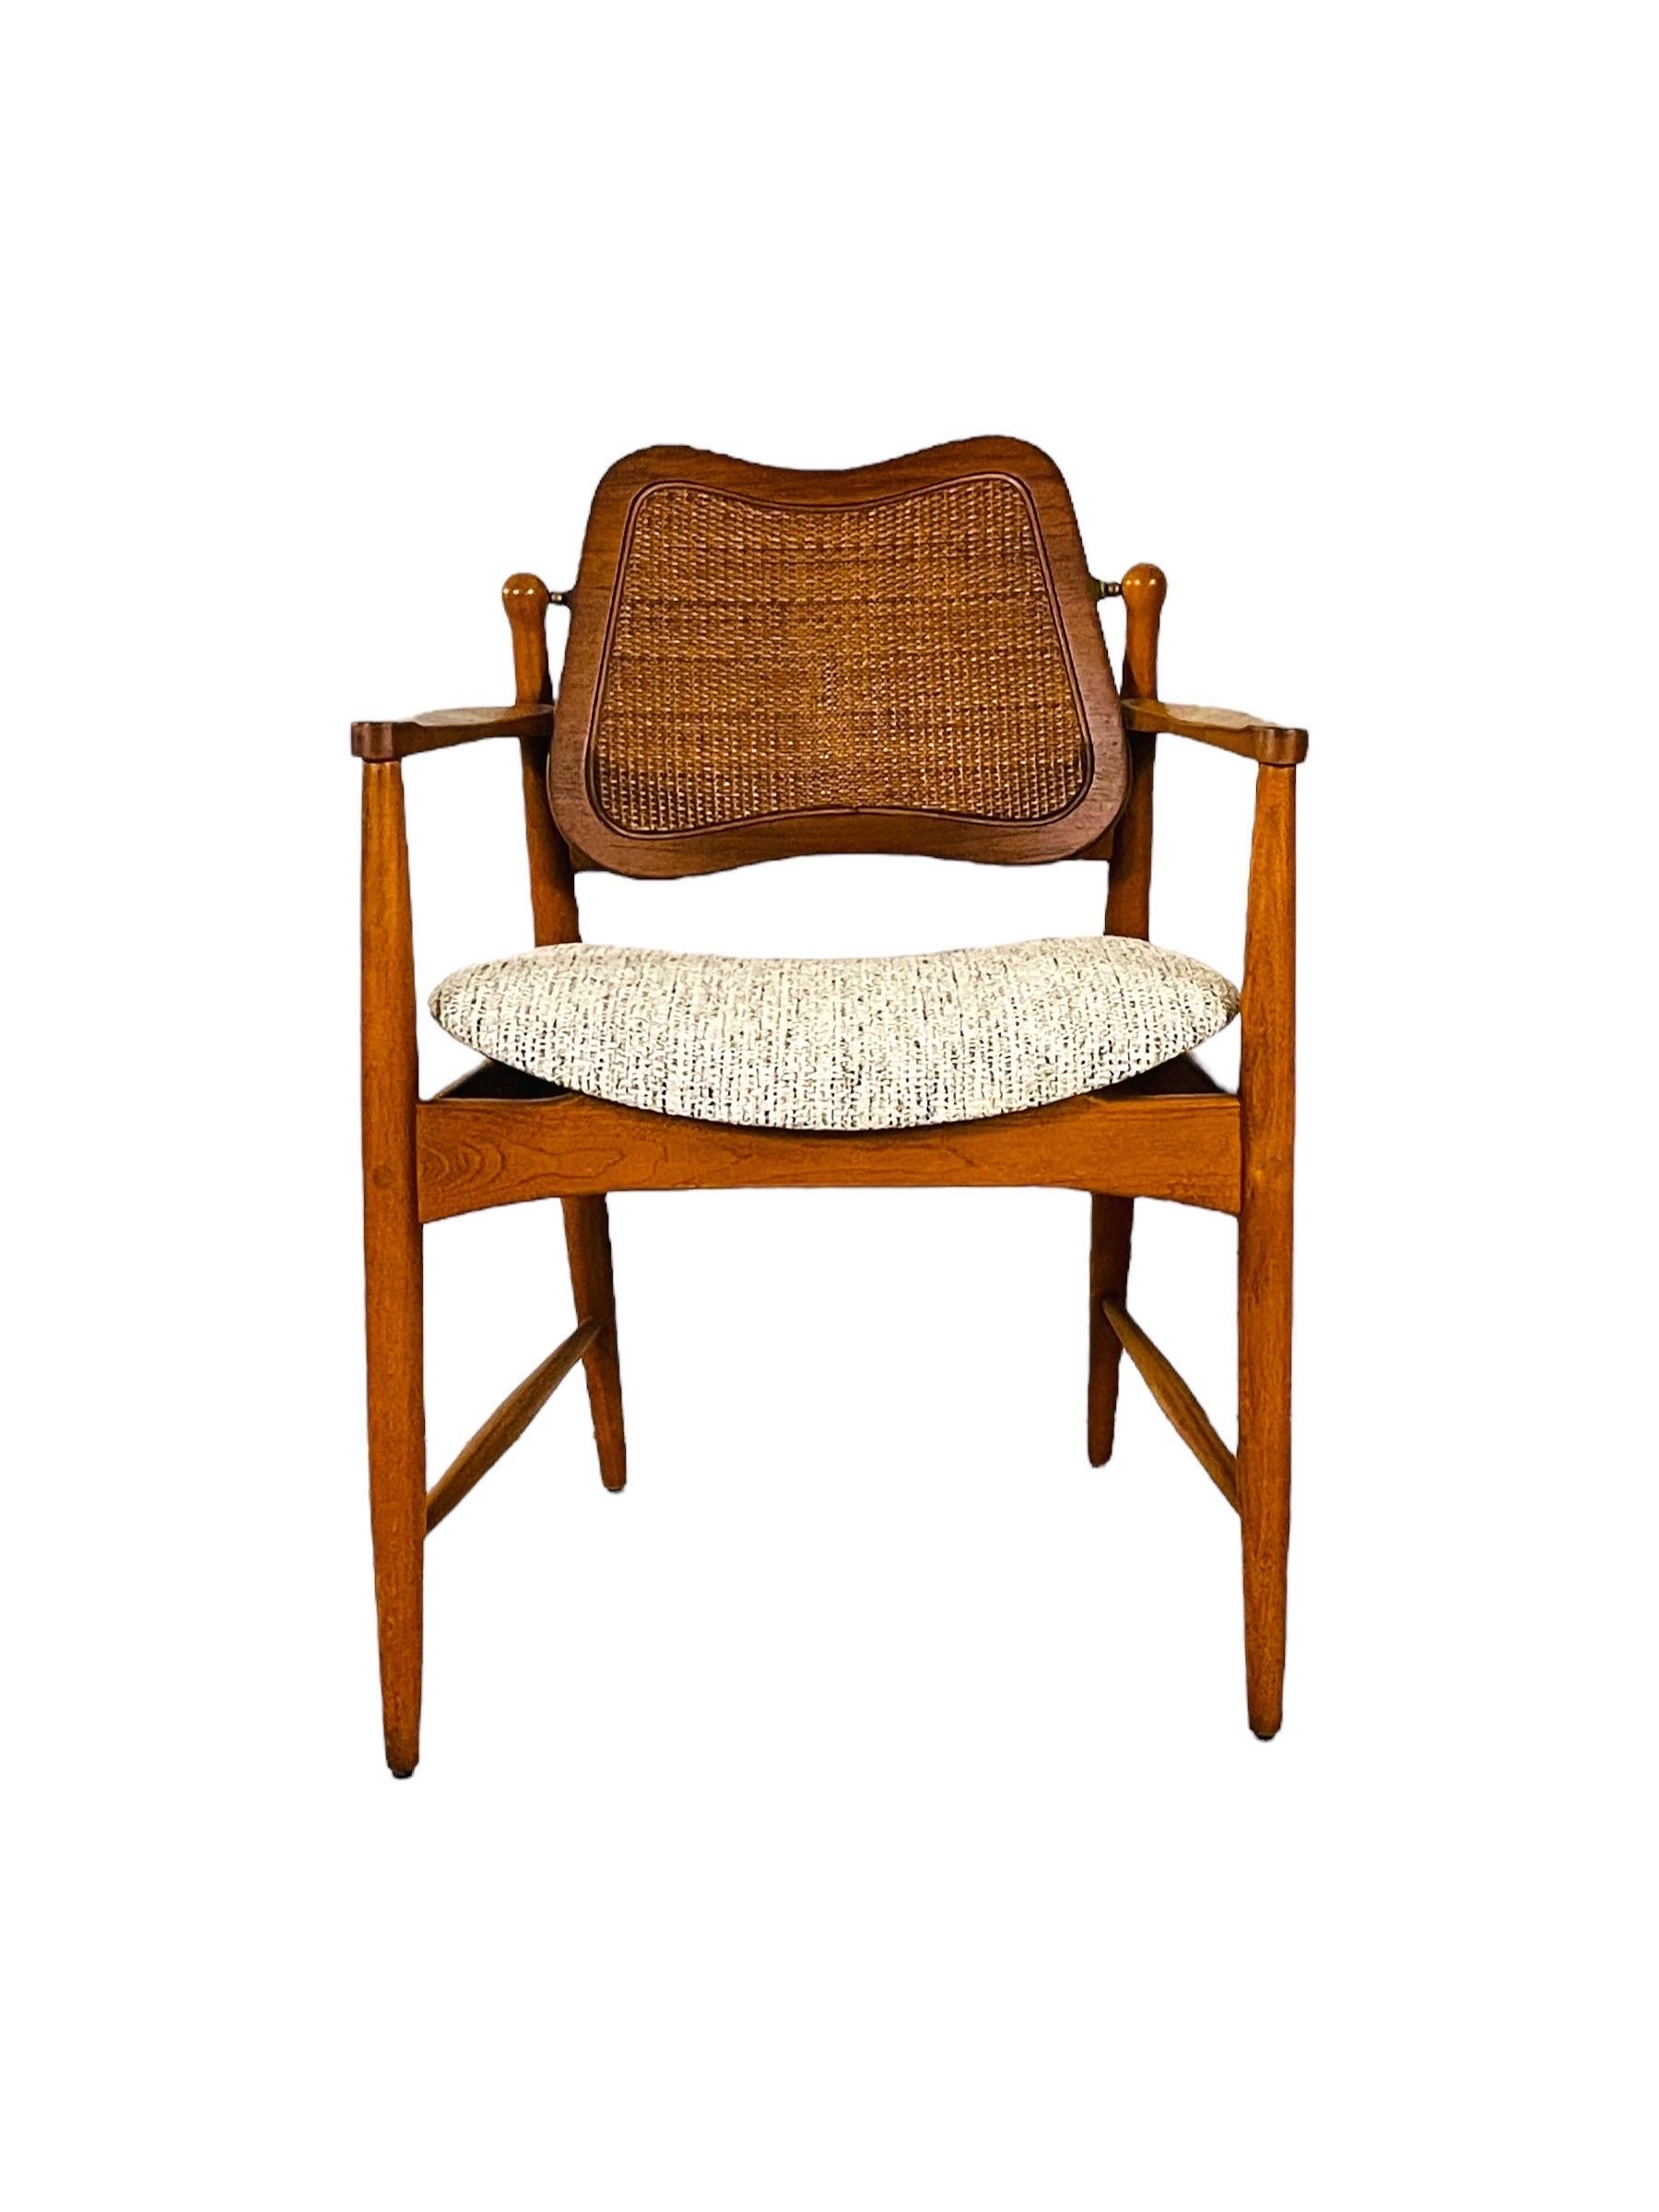 Dieses exquisite Sesselpaar FD-186 von Arne Vodder für France & Son, ein Markenzeichen für dänisches Design, wertet Ihren Raum auf. Diese Stühle zeigen die elegante Schlichtheit und den Funktionalismus, die für die dänischen Möbel der